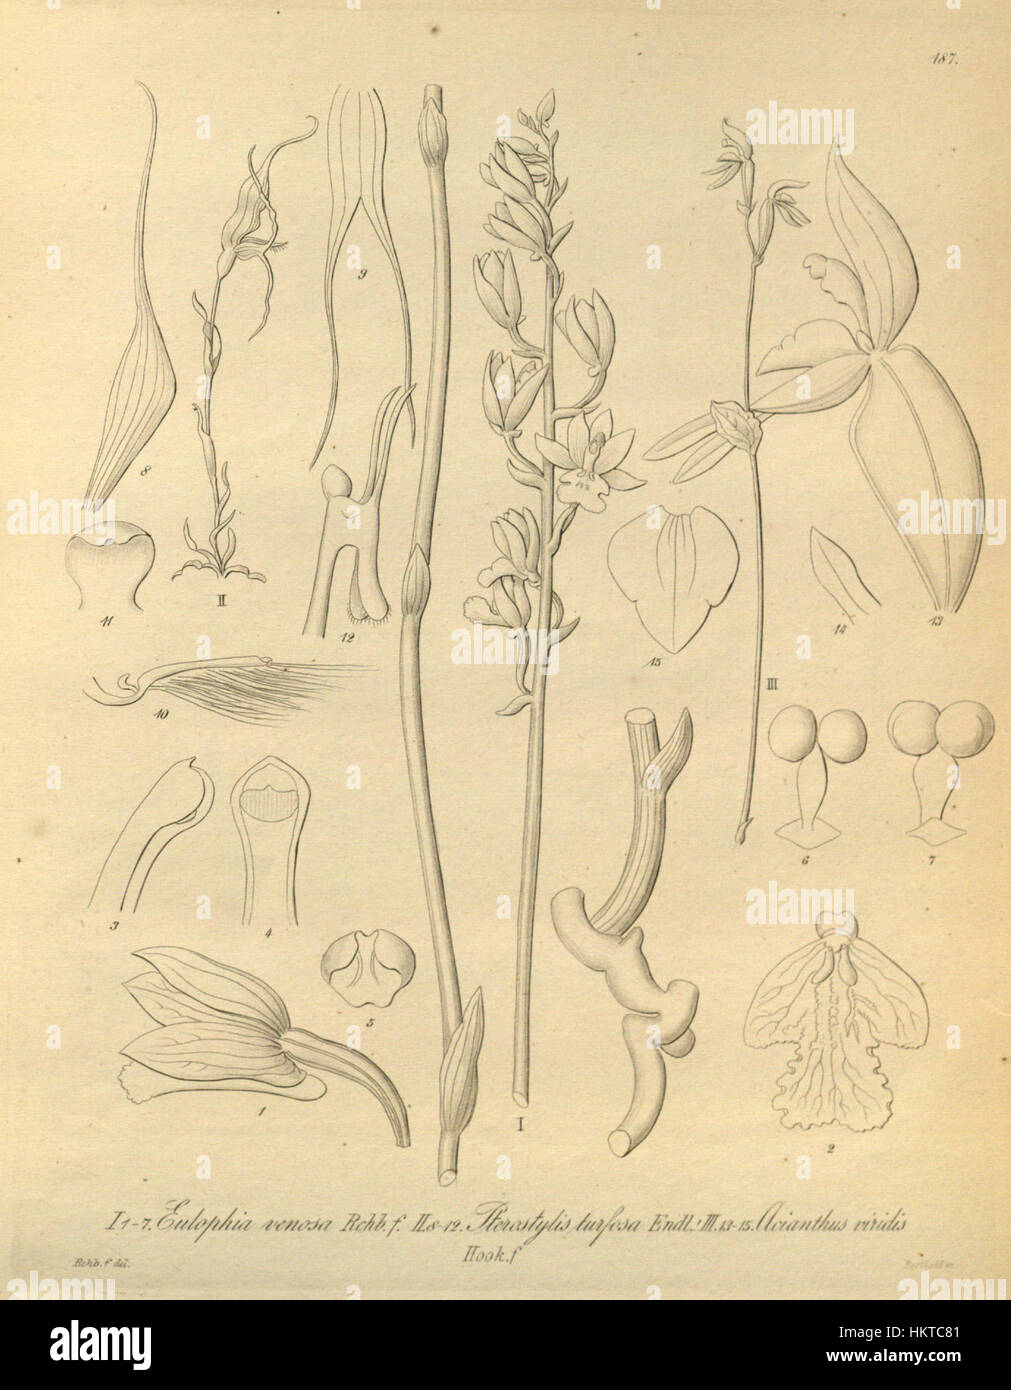 Eulophia venosa - Pterostylis turfosa - Townsonia viridis (as Acianthus viridis) - Xenia 2 pl 187 Stock Photo